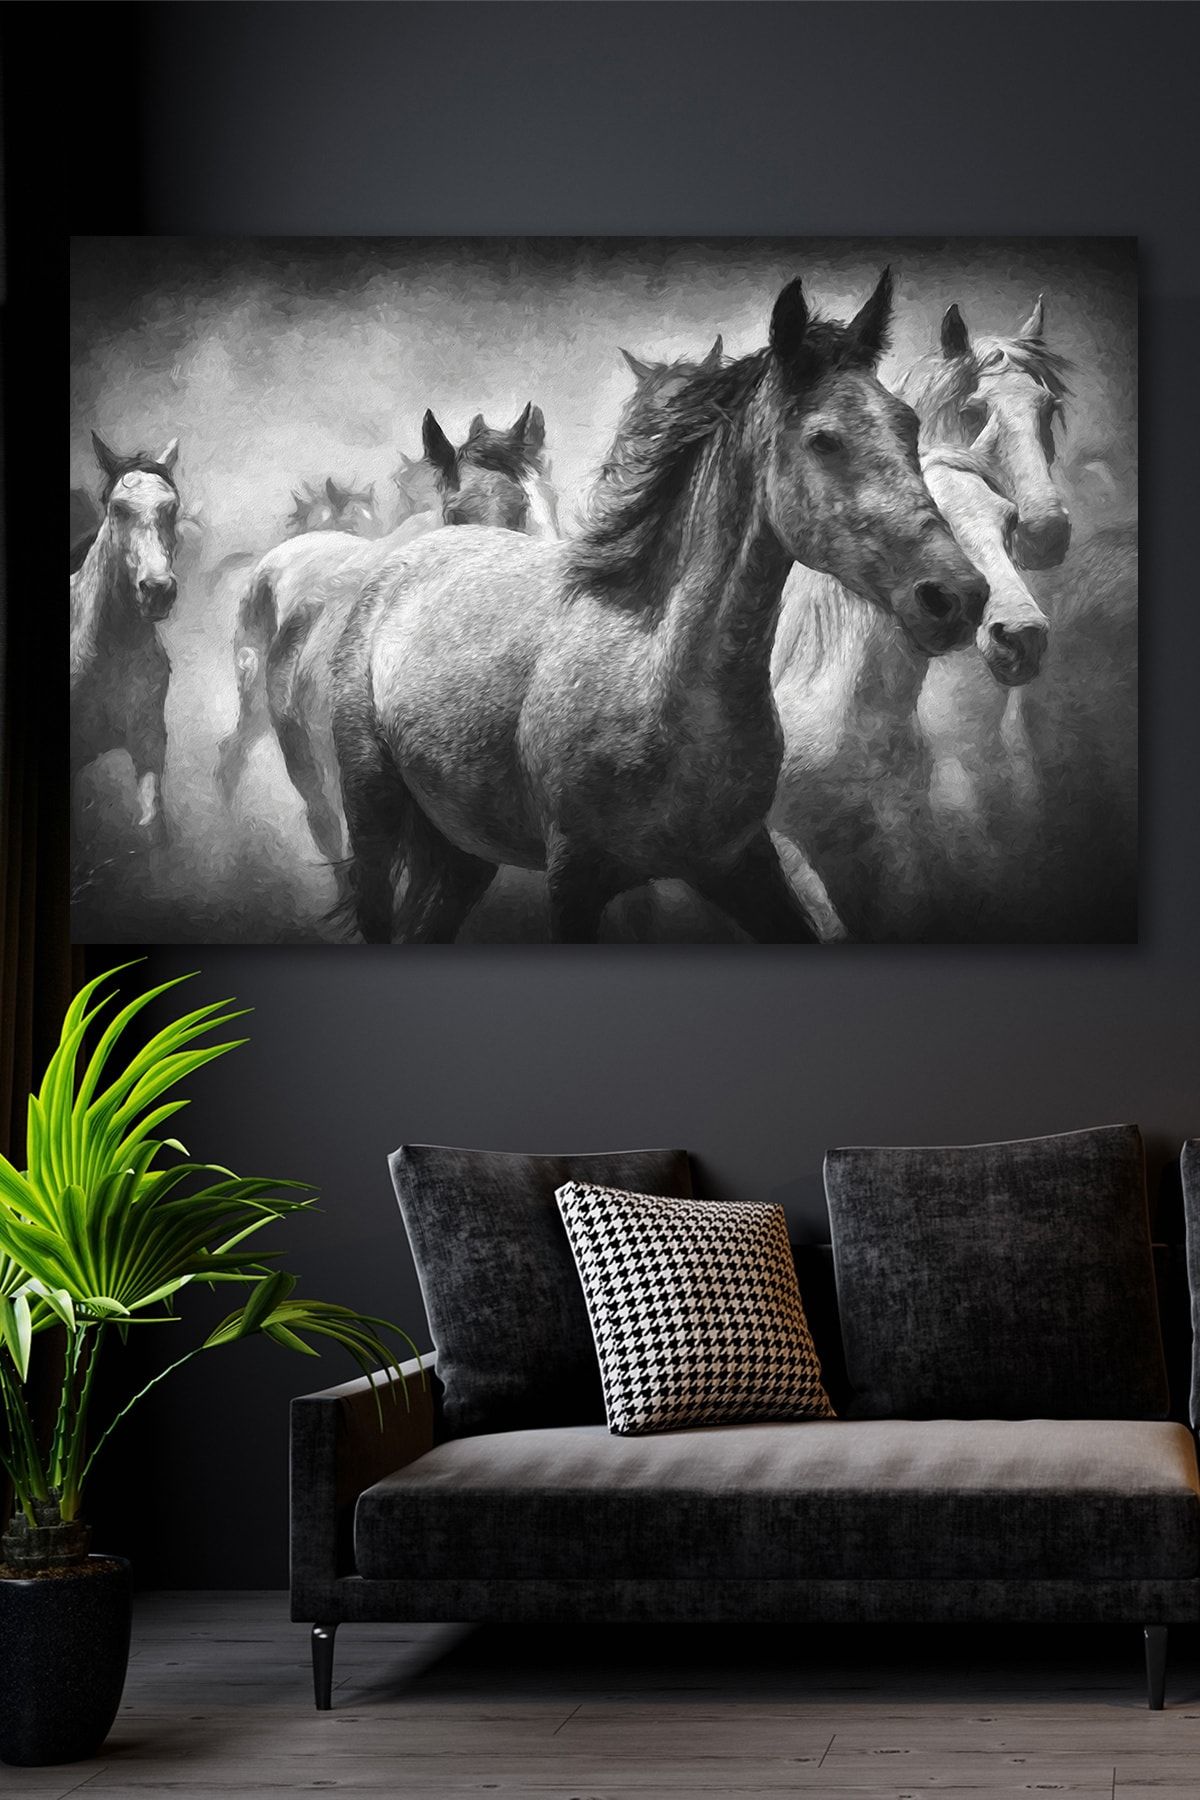 Hediyeler Kapında Yılkı Atları Kanvas Duvar Tablo 100x140